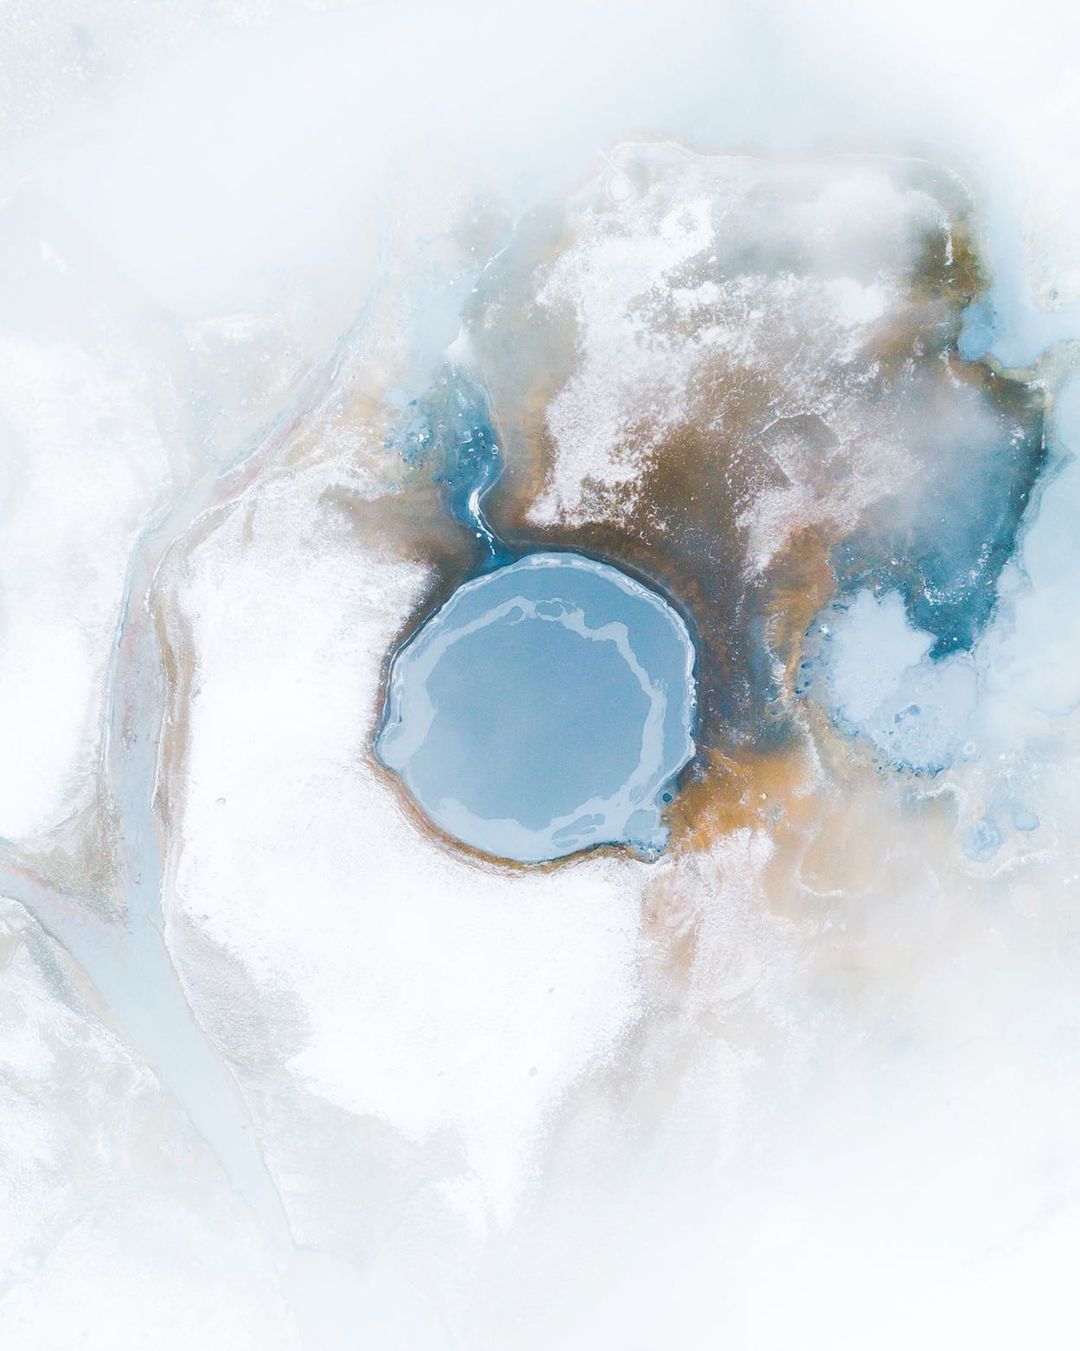 Суровая красота Исландии на снимках от Лесли Брюггер